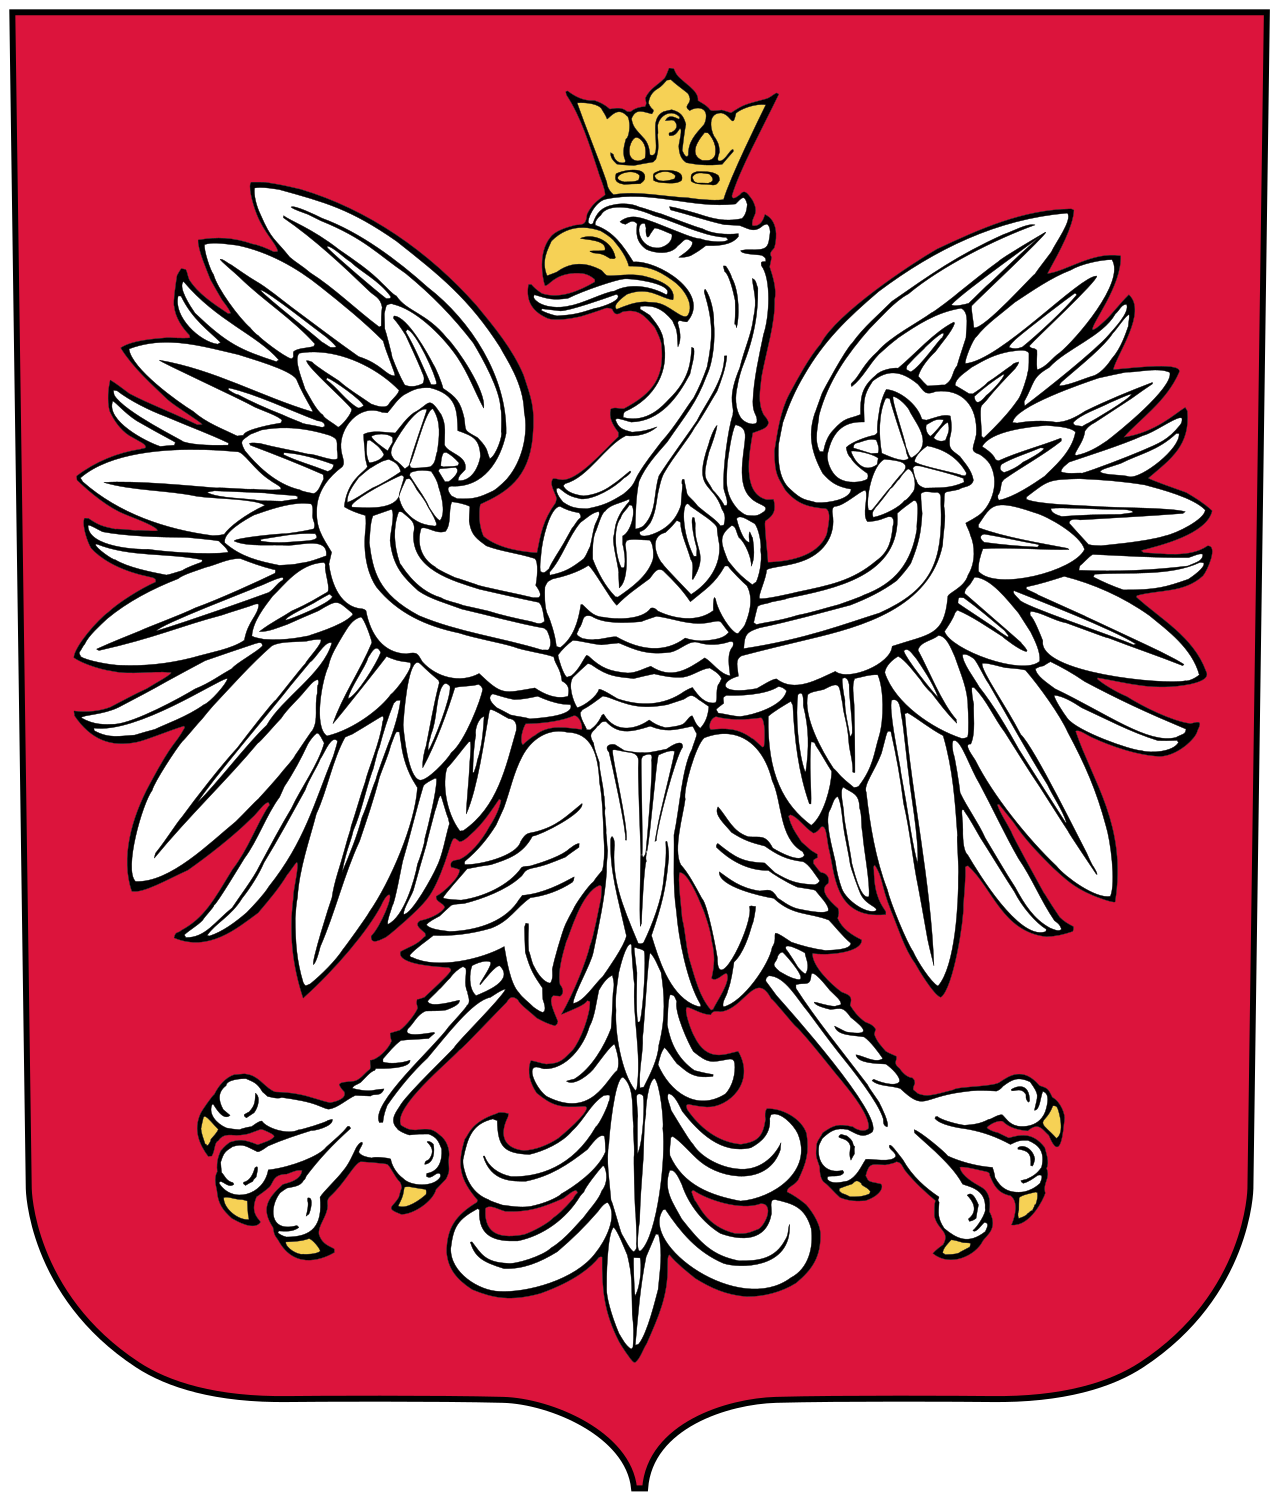 波兰共和国国徽立陶宛共和国旗帜立陶宛共和国国徽鲁塞尼亚共和国旗帜